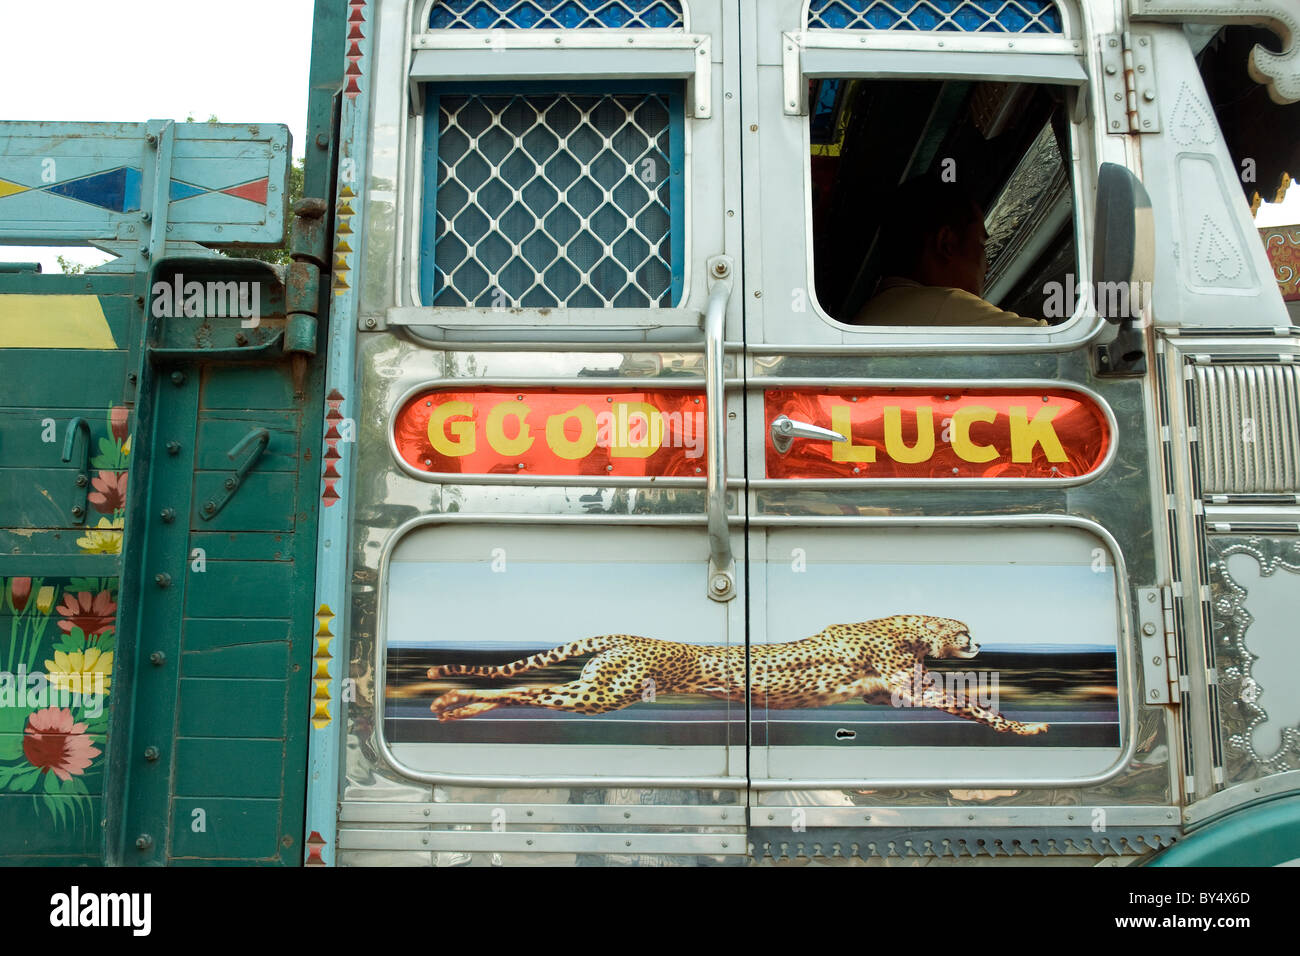 Des slogans tels que 'Bonne Chance' sont souvent les ornements sur les marchandises des transporteurs, ou de camions, celui-ci au Bhoutan, près de la frontière indienne Banque D'Images